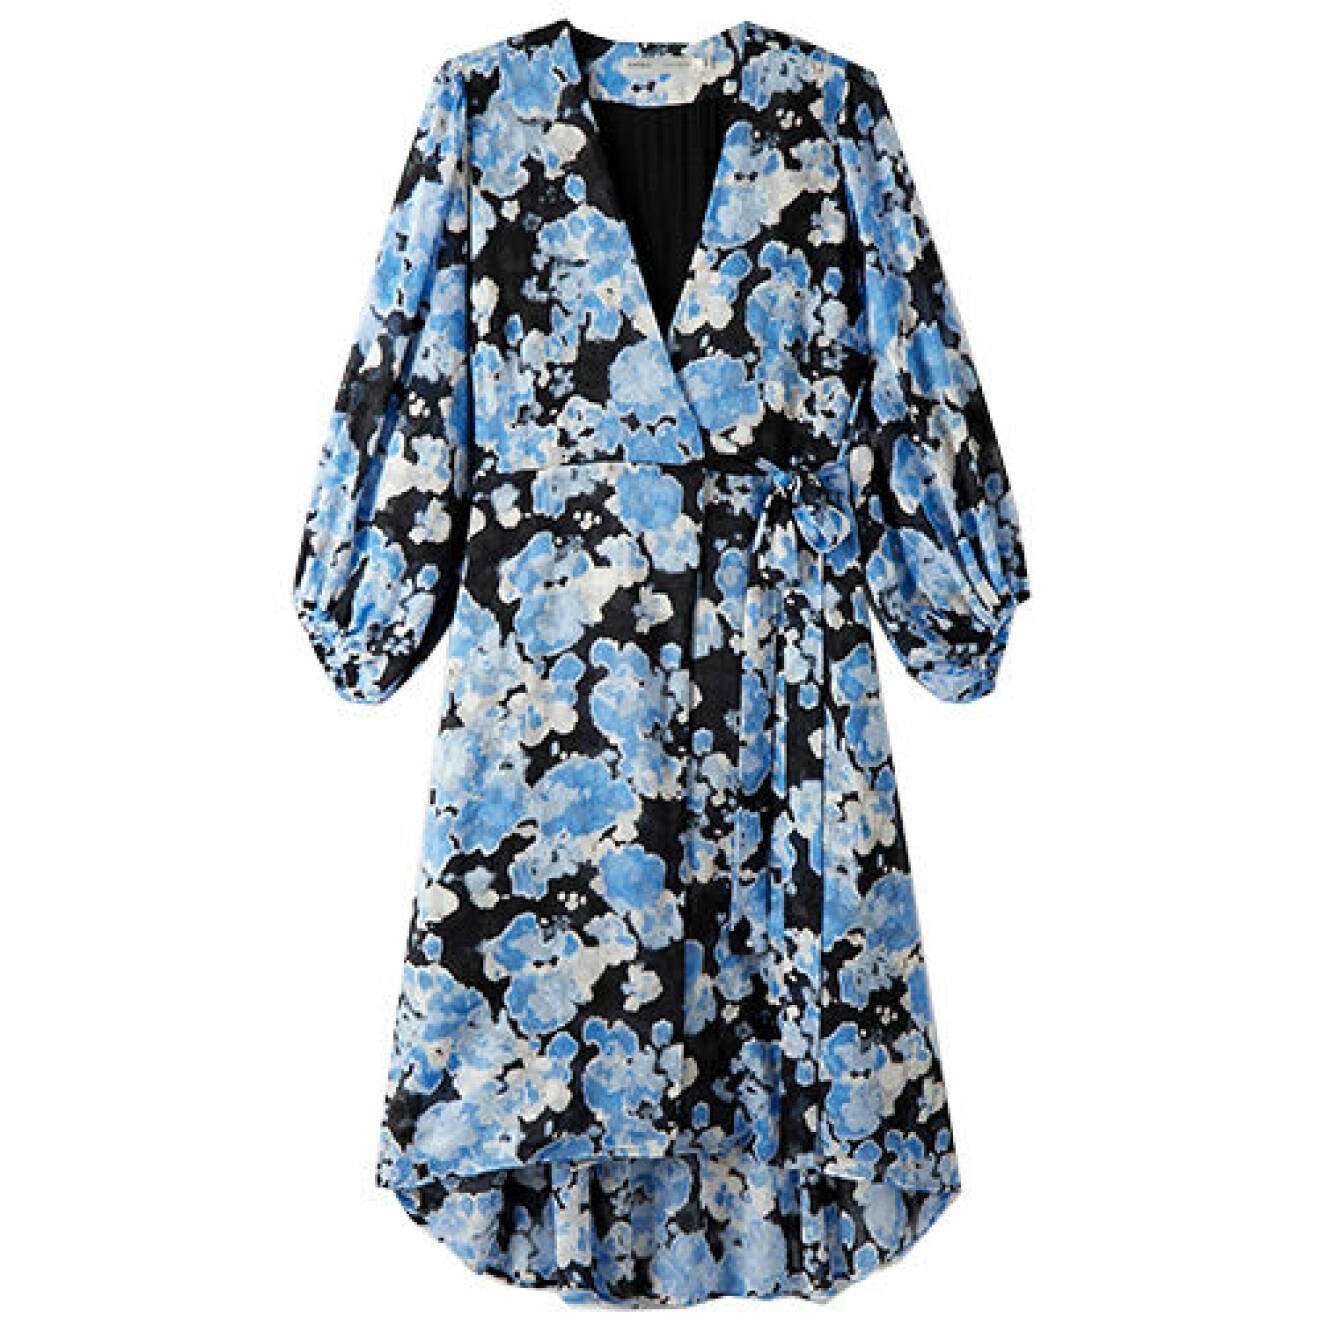 Blommig omlottklänning i blått och svart från Inwear